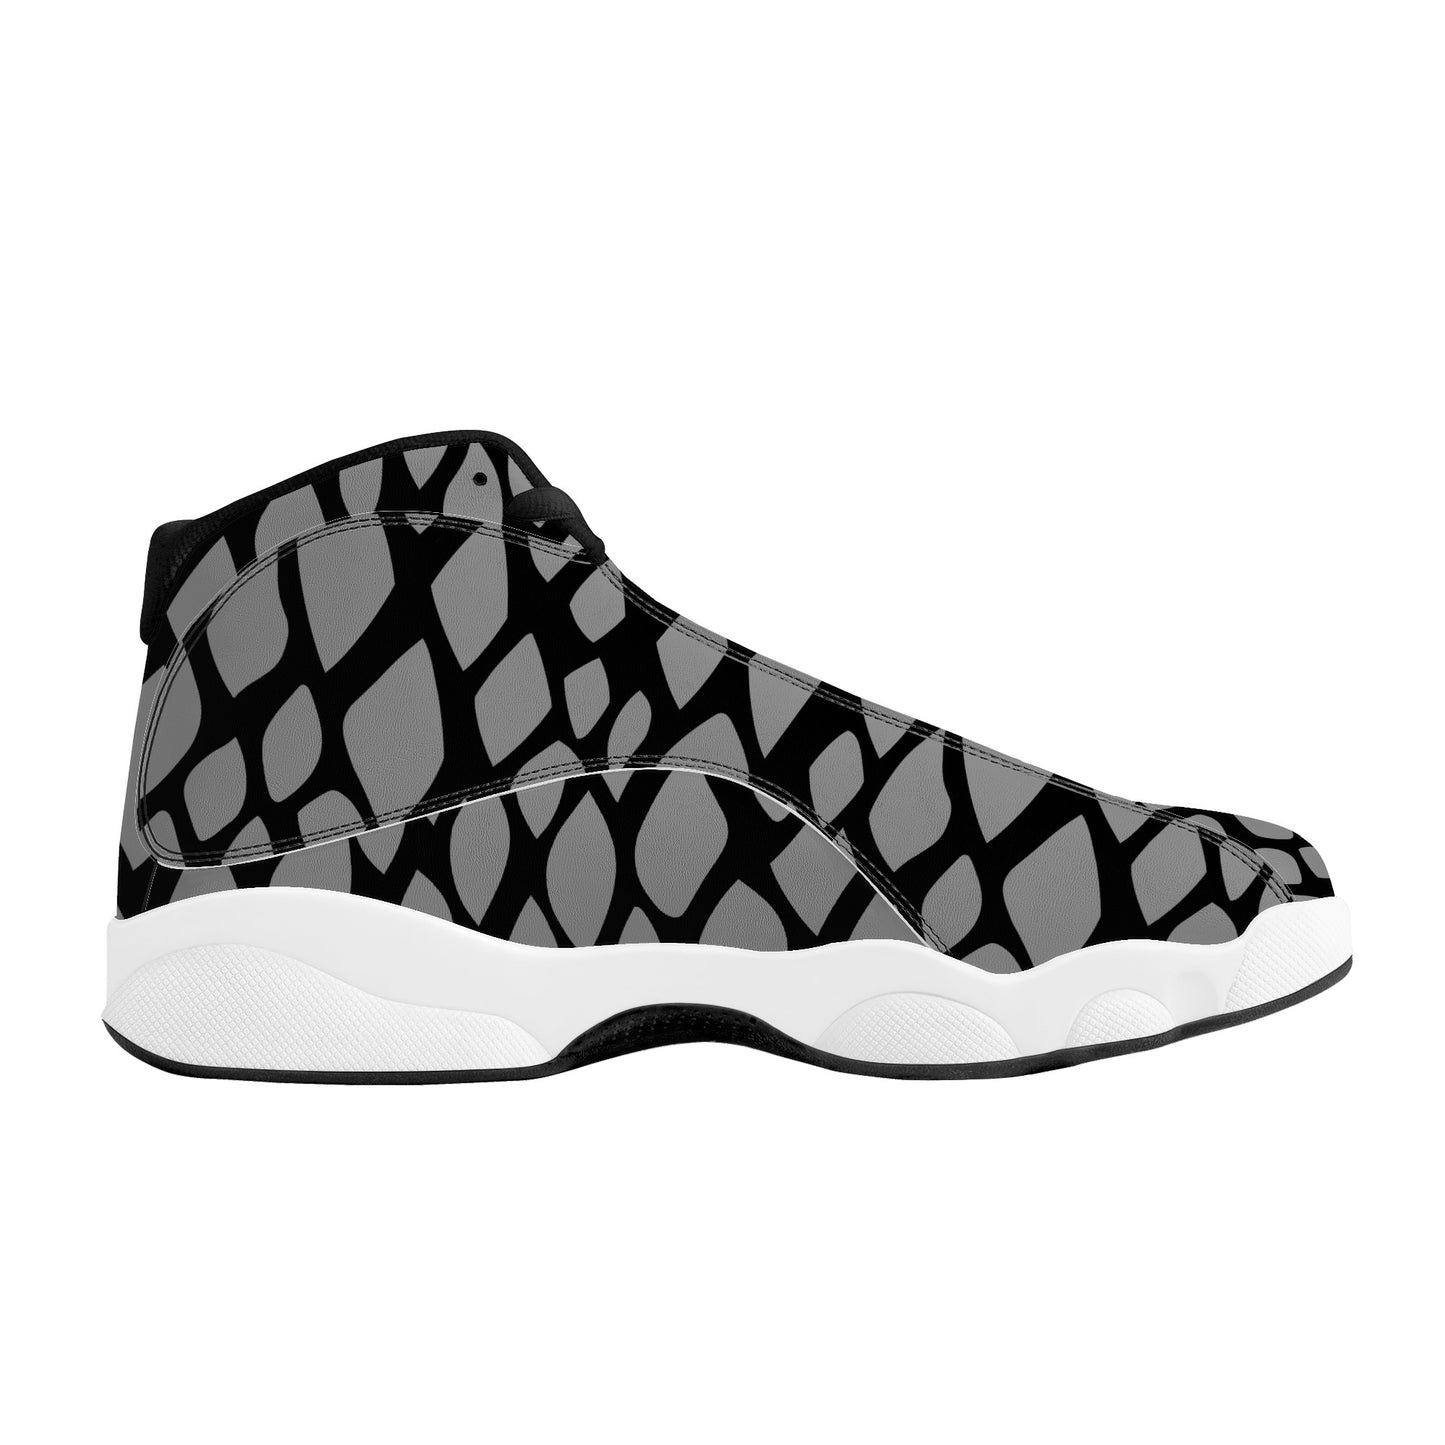 "Mono Snake" Basketball Shoes